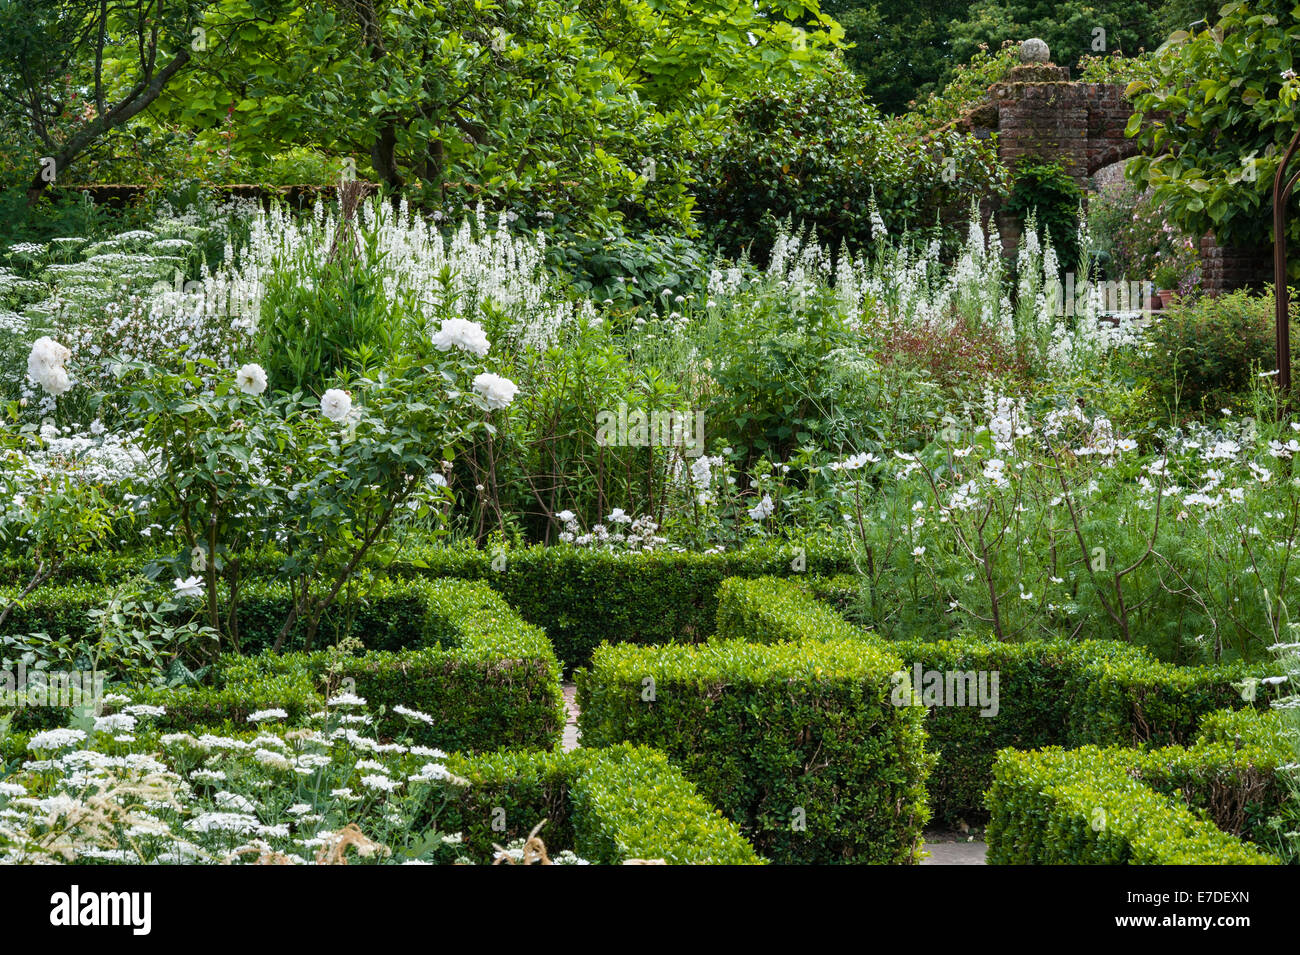 Château de Sissinghurst, Kent, Royaume-Uni. Parterres dans le jardin blanc en été. Roses iceberg et wlowherb blanc (epilobium angustifolium) Banque D'Images